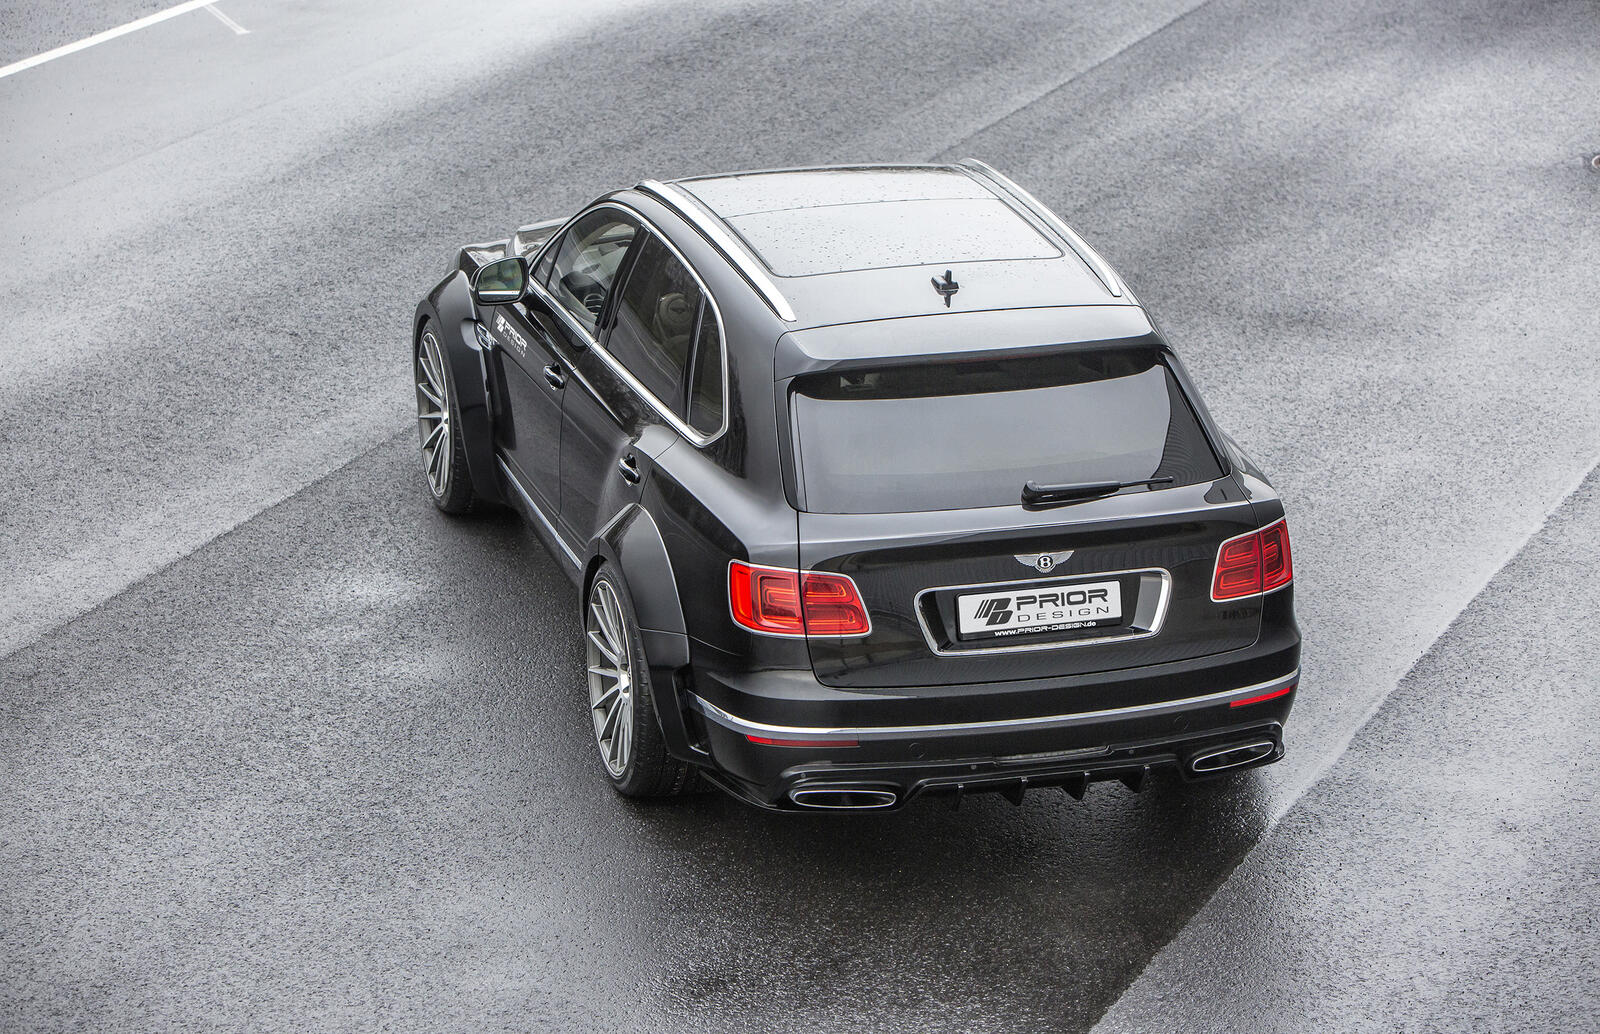 Free photo 2018 Bentley Bentayga crossover in black rear view